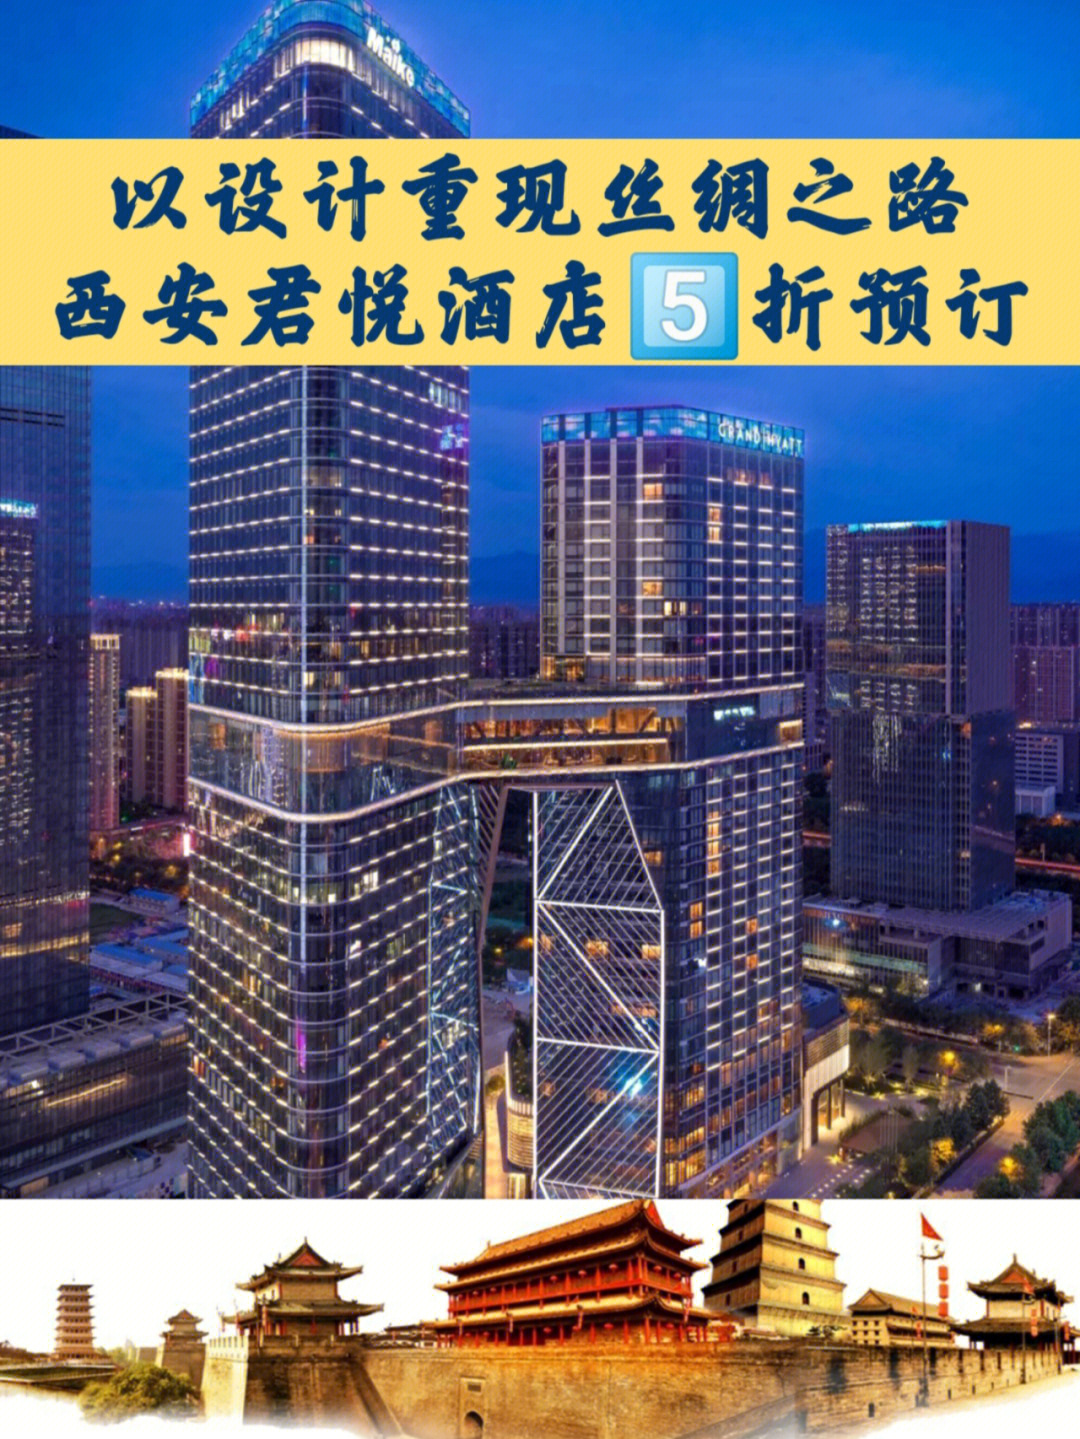 西安君悦酒店地址图片